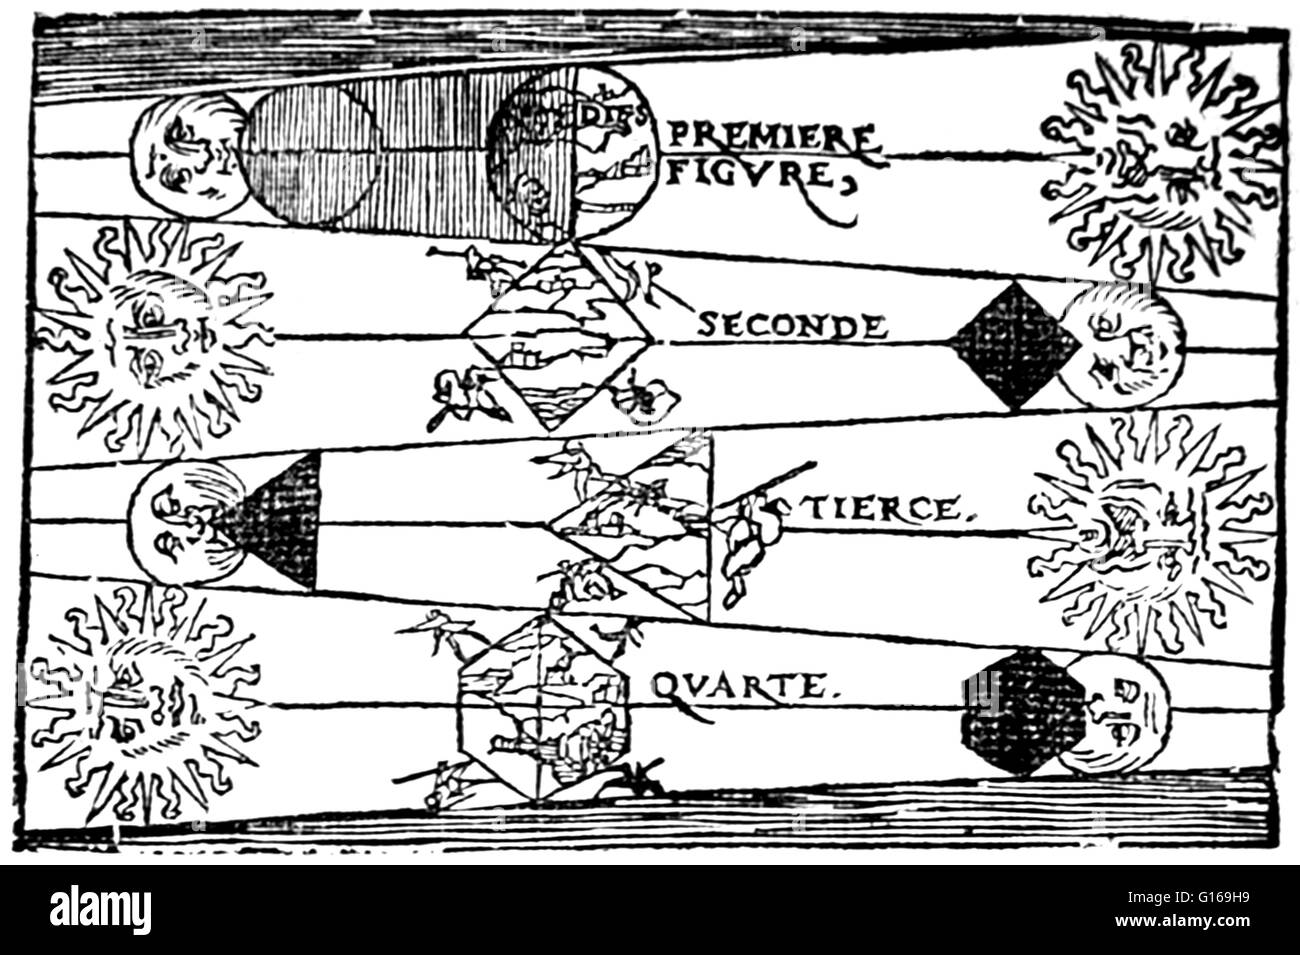 Illustrazione da Petrus Apiano', La cosmographie (1551) mostra la prova per la sfericità della Terra osservando la forma dell'ombra proiettata sulla luna durante un'eclisse lunare. Petrus Apiano (16 Aprile 1495 - 21 Aprile 1552) era un tedesco umanista, k Foto Stock